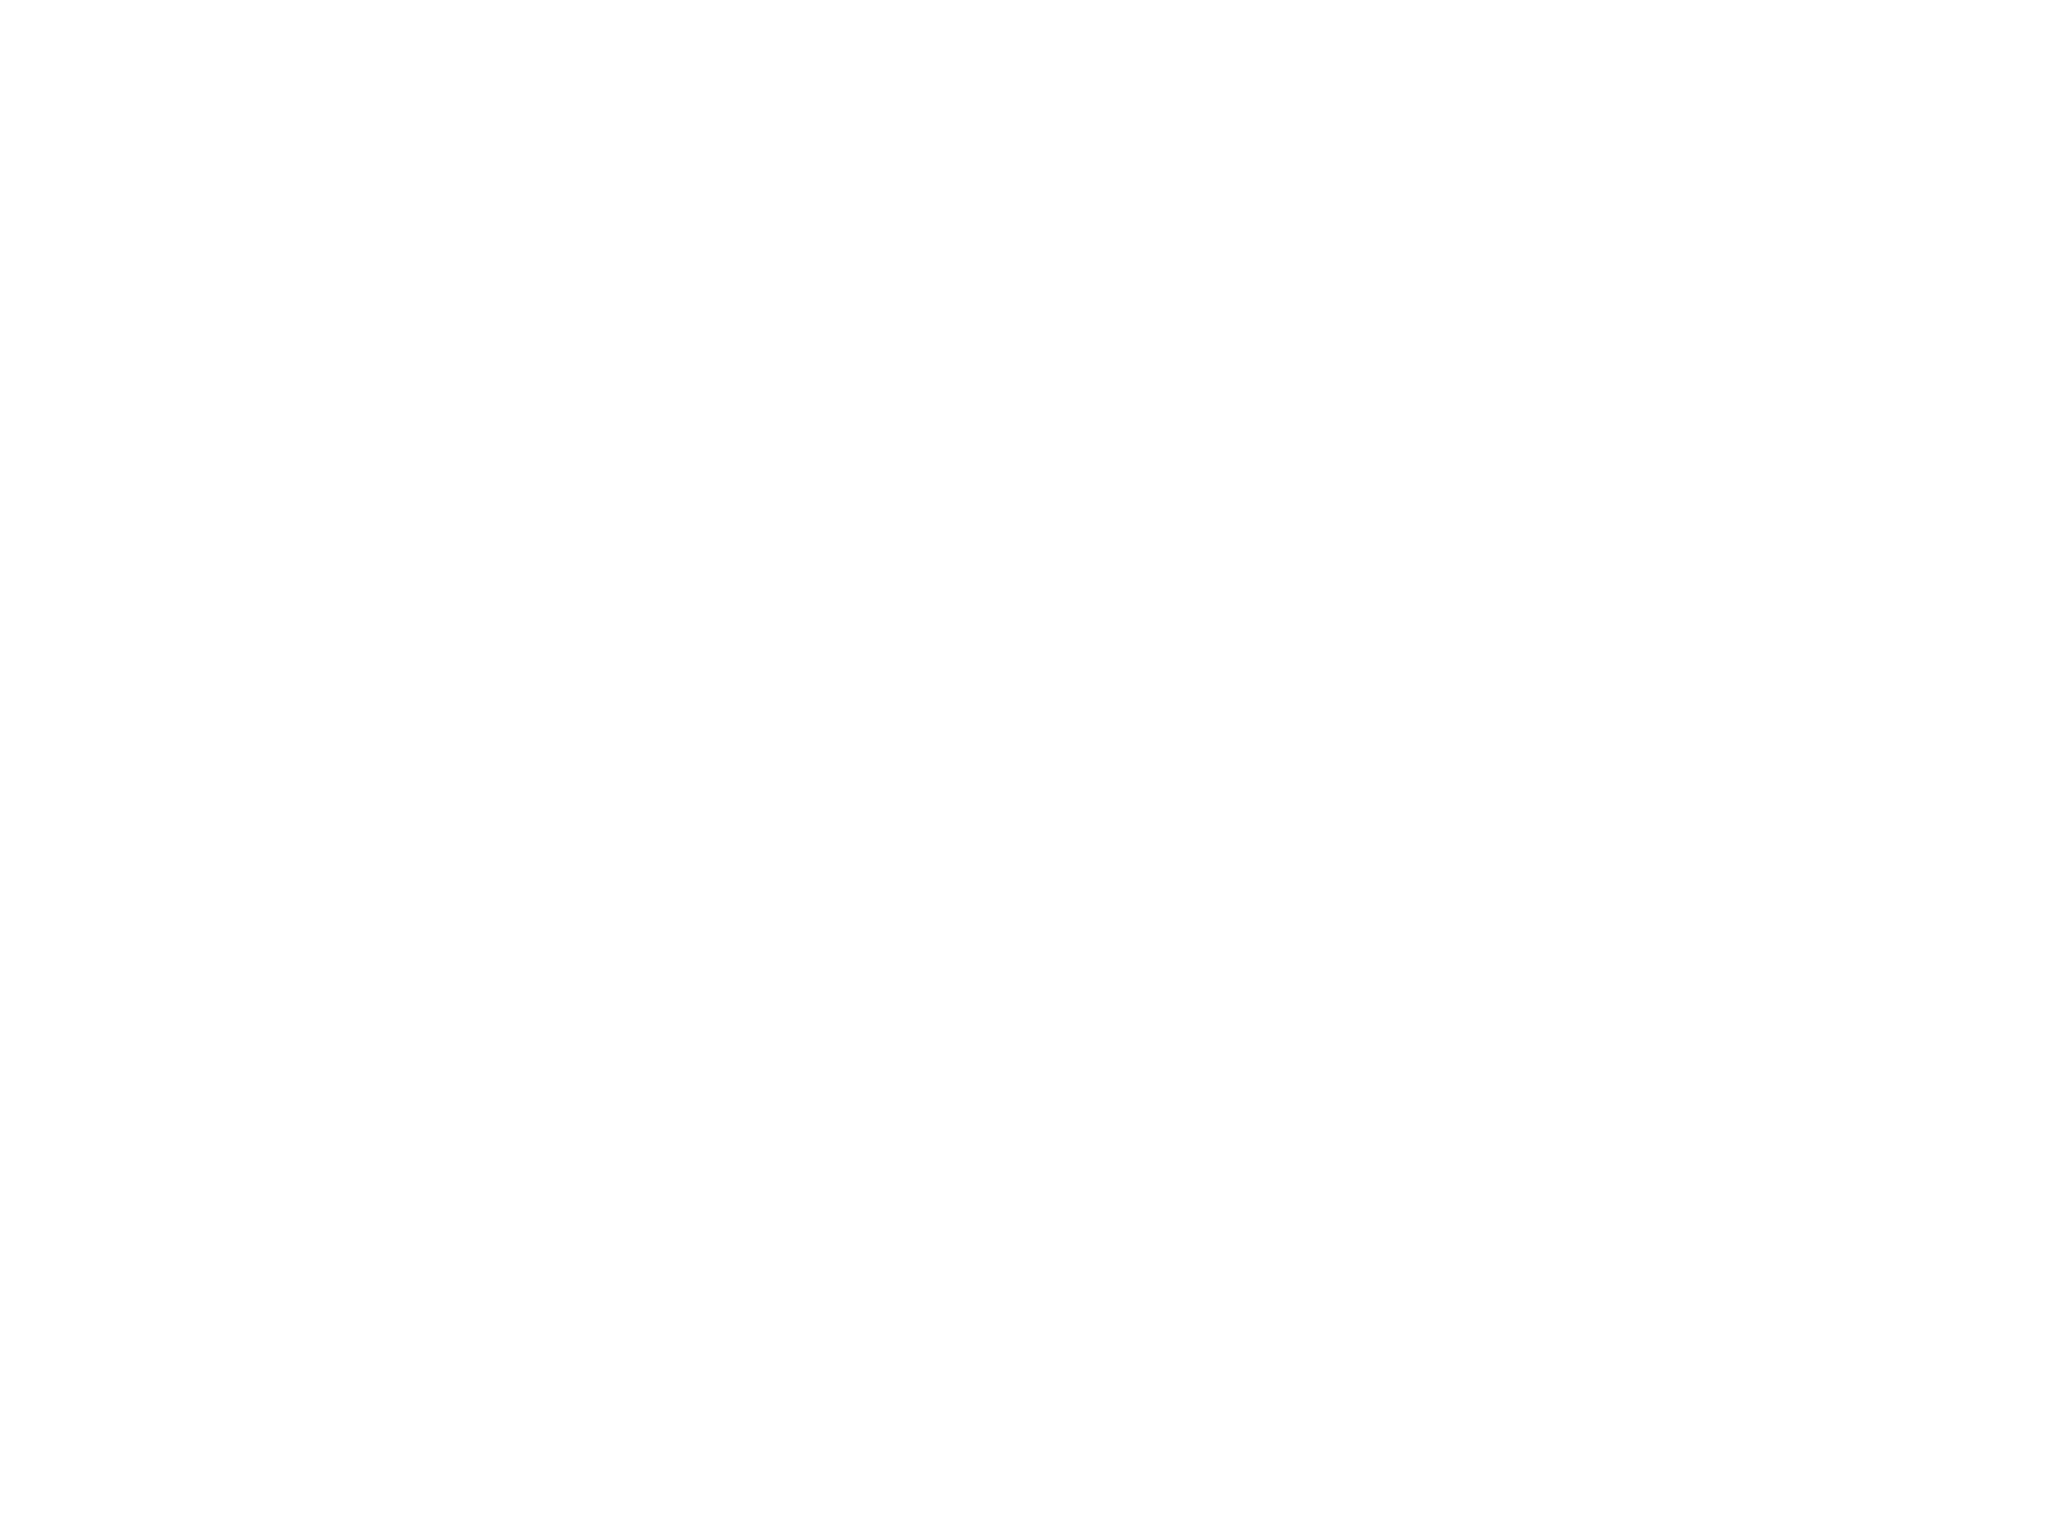 Introspect Theatre Company